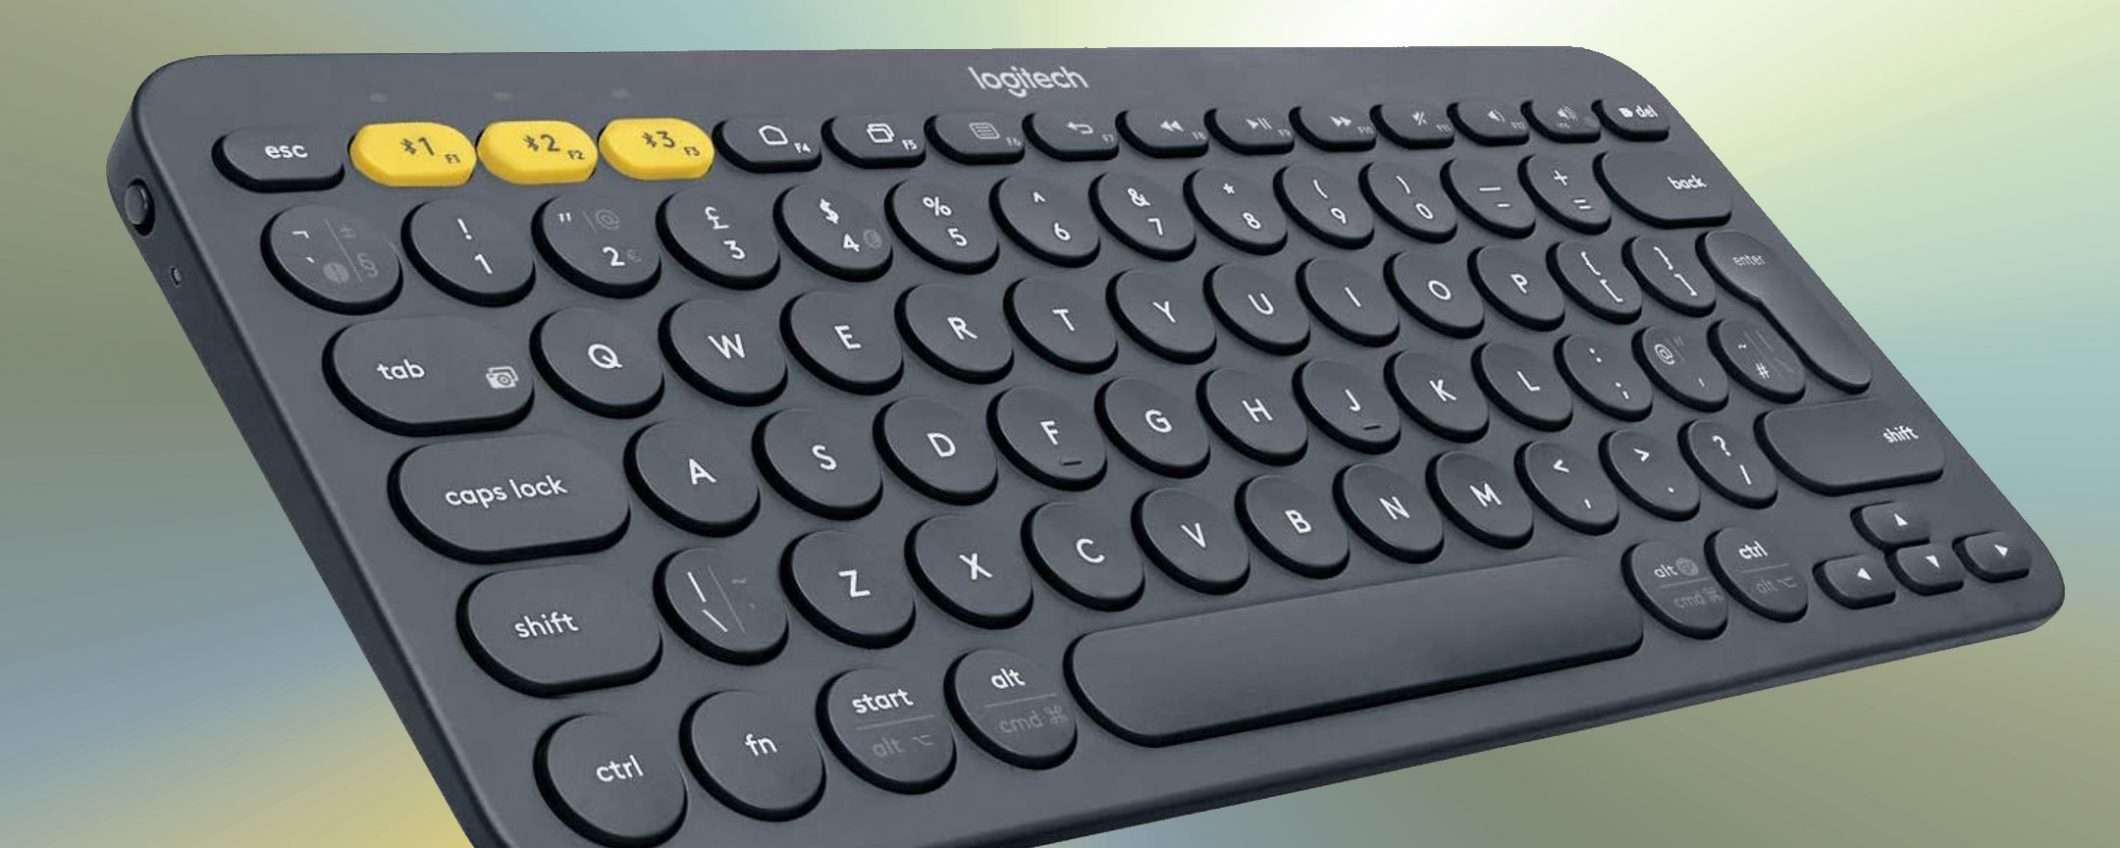 K380: ecco la tastiera che ti porterai in vacanza